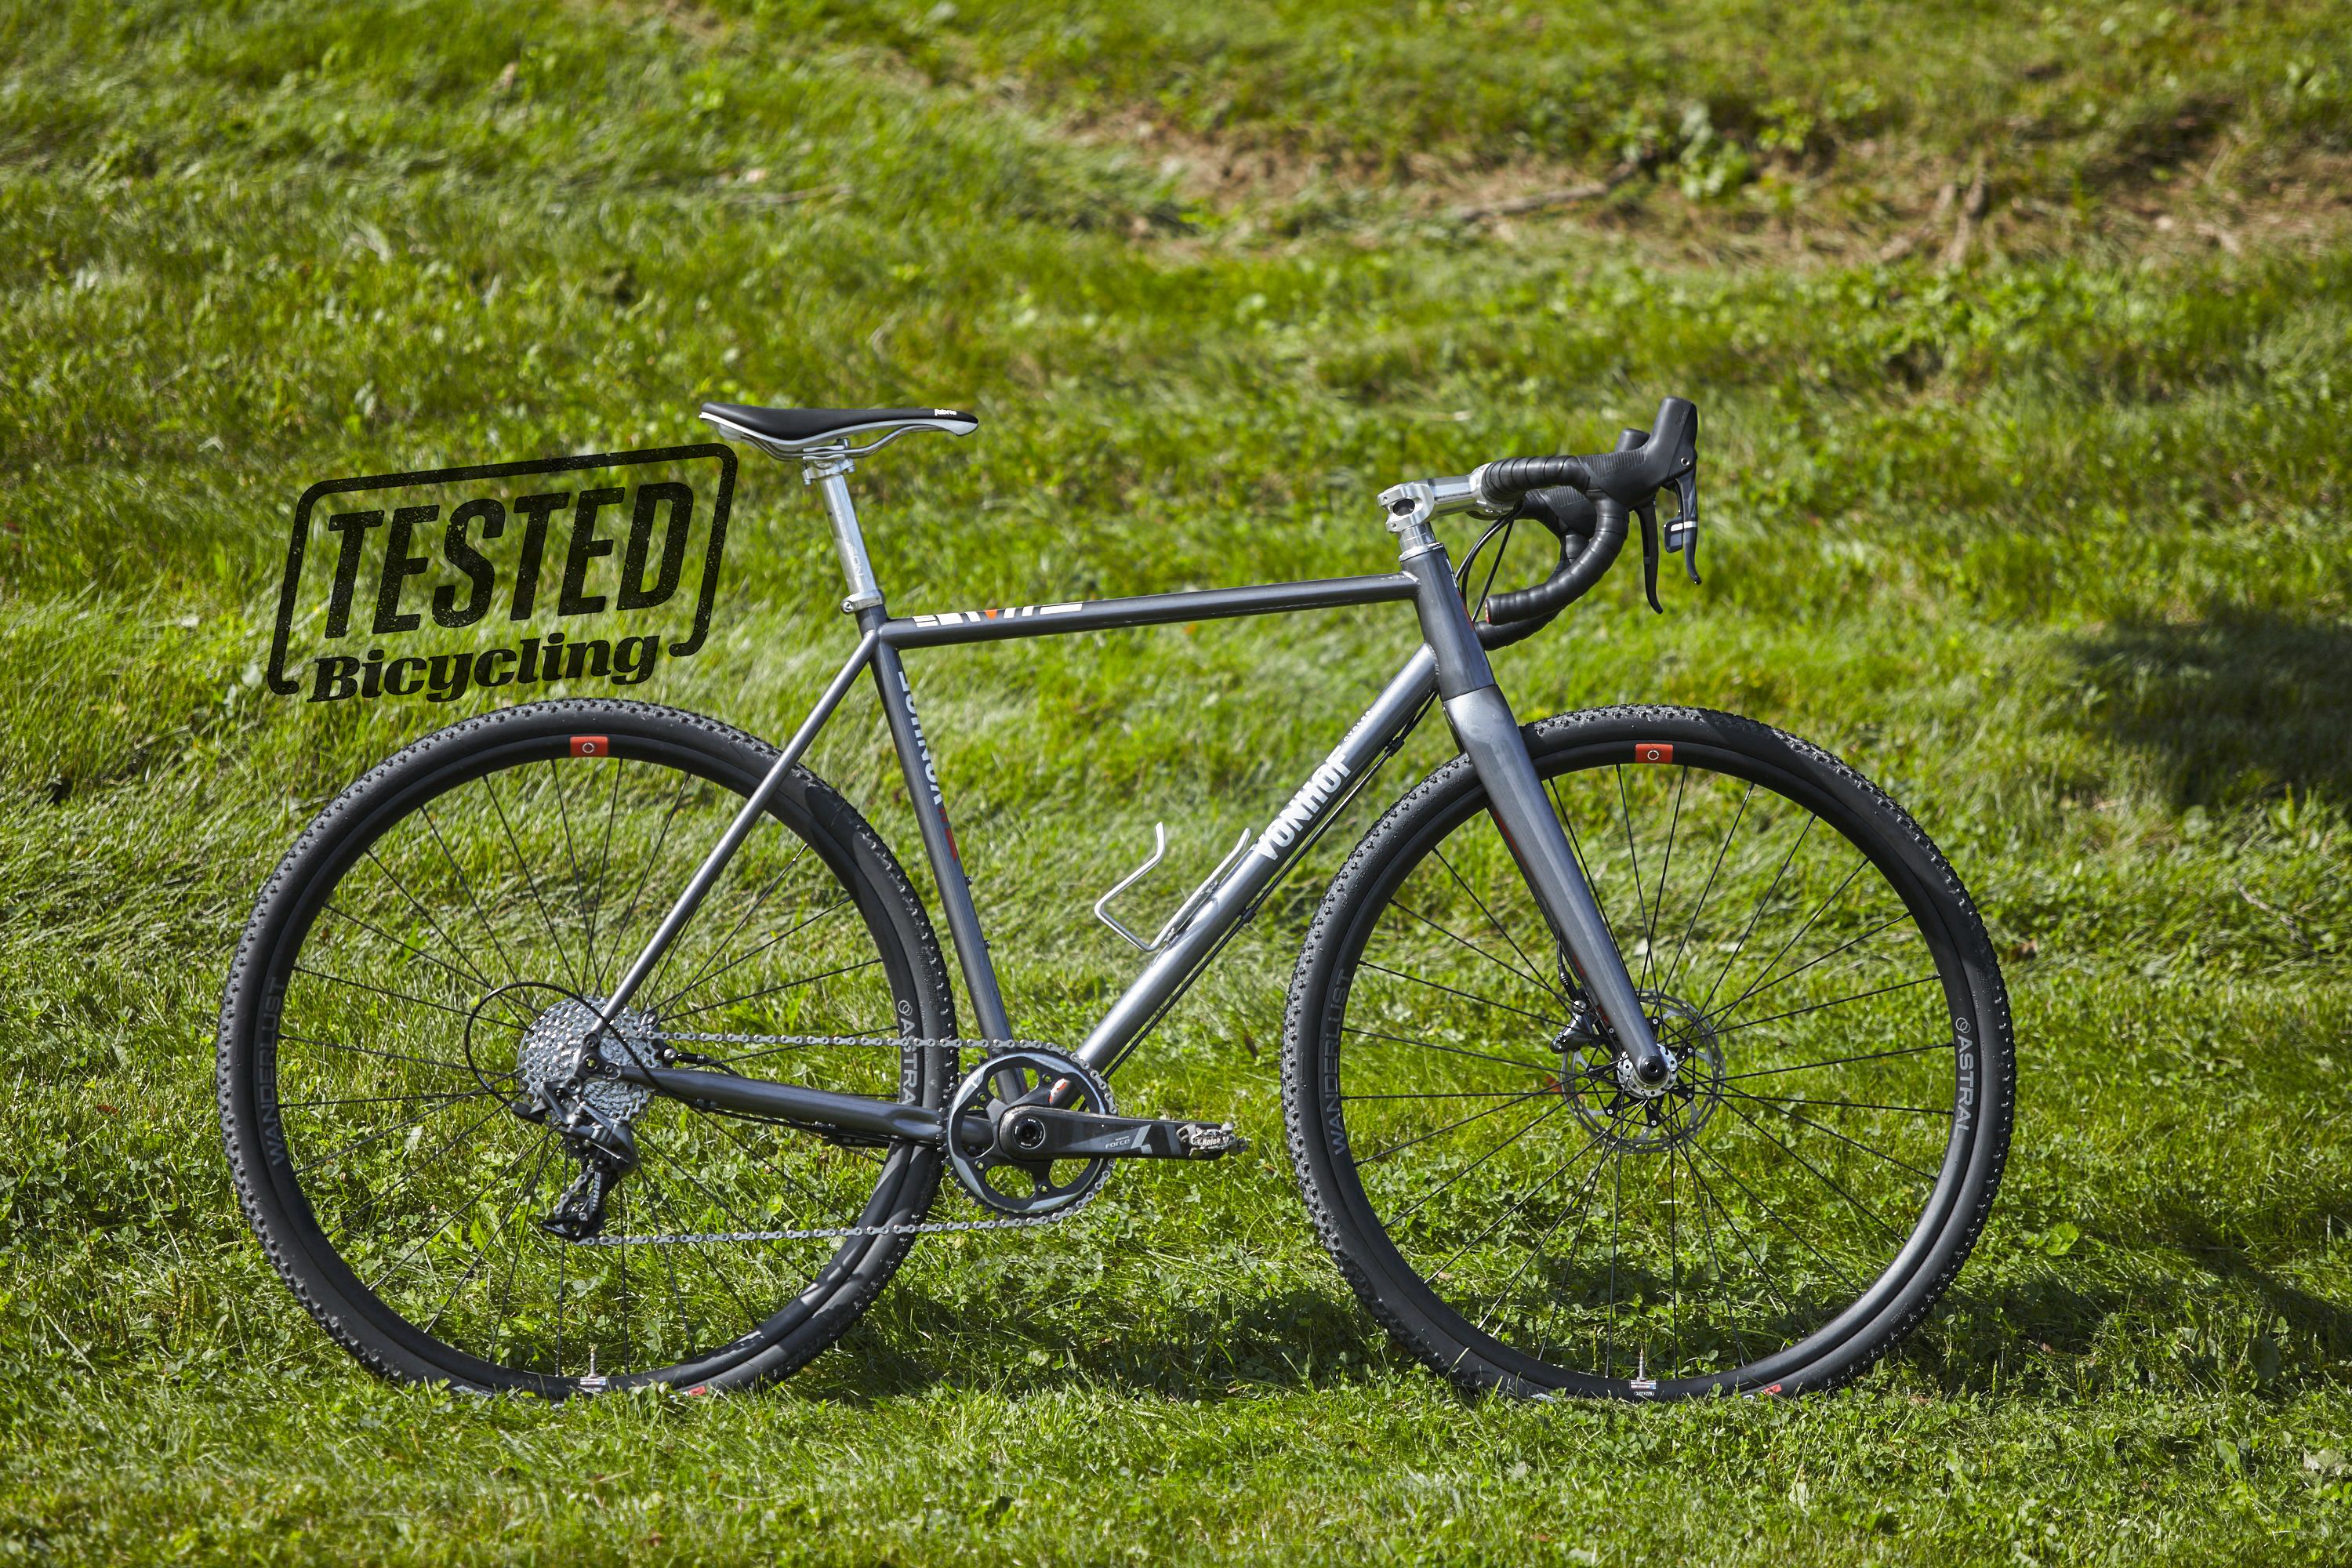 steel endurance bike